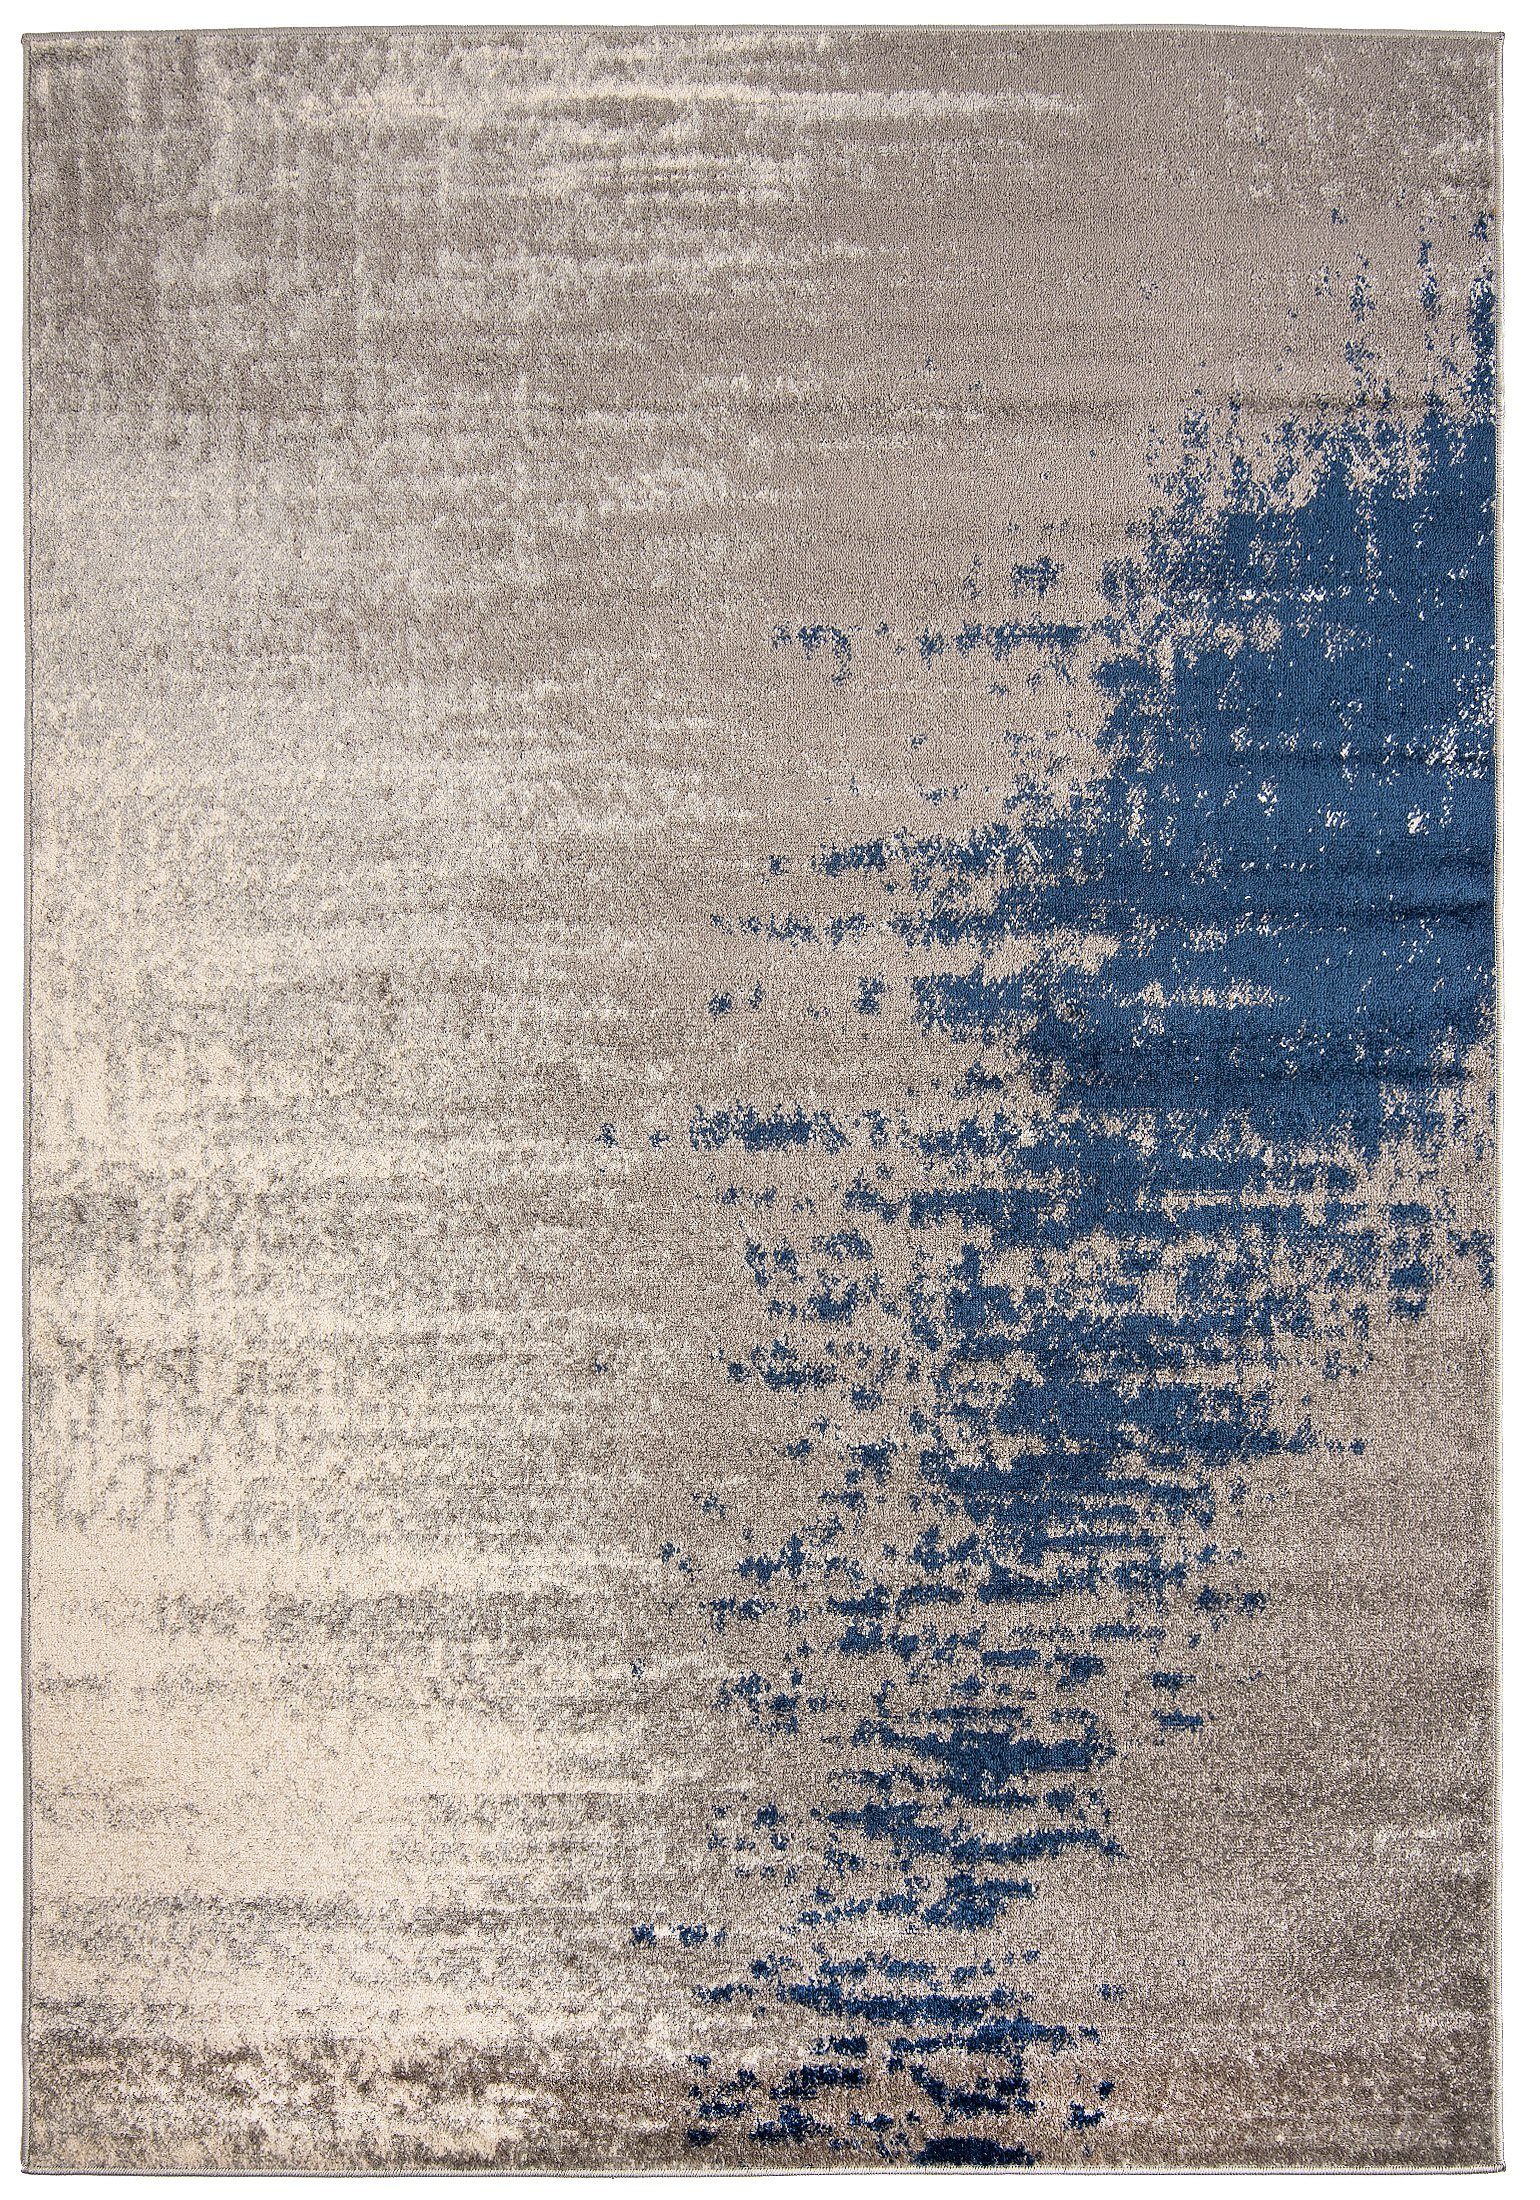 Designteppich Modern Teppich Abstrakt Muster Grau Blau farbe - Kurzflor, Mazovia, 120 x 170 cm, Geeignet für Fußbodenheizung, Höhe 7 mm, Kurzflor